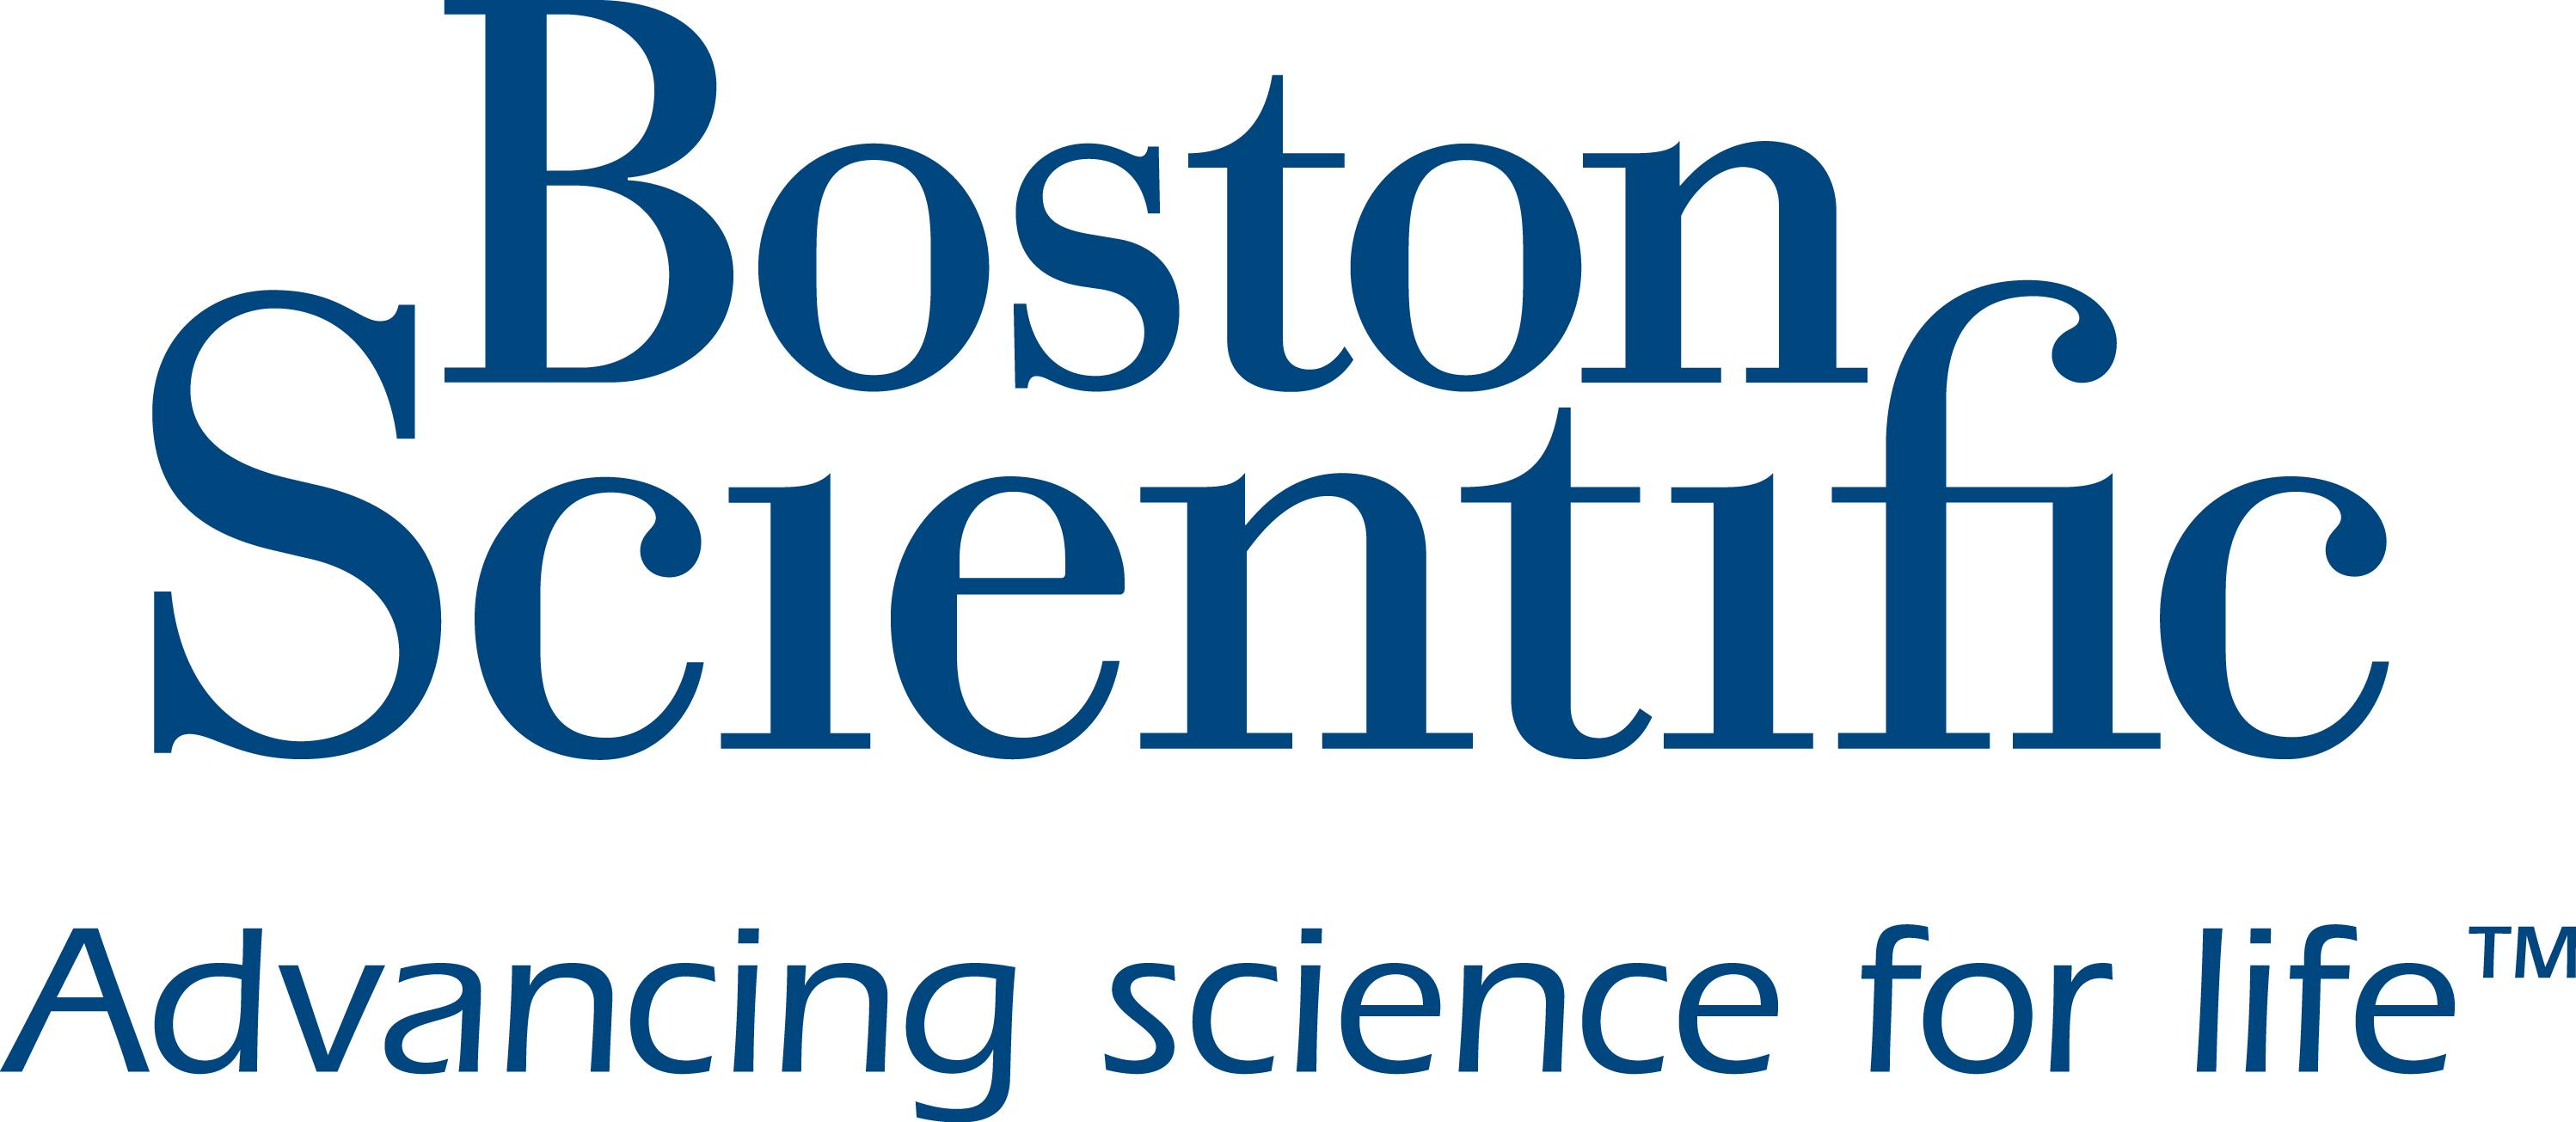 Boston Scientific. Advancing science for life.